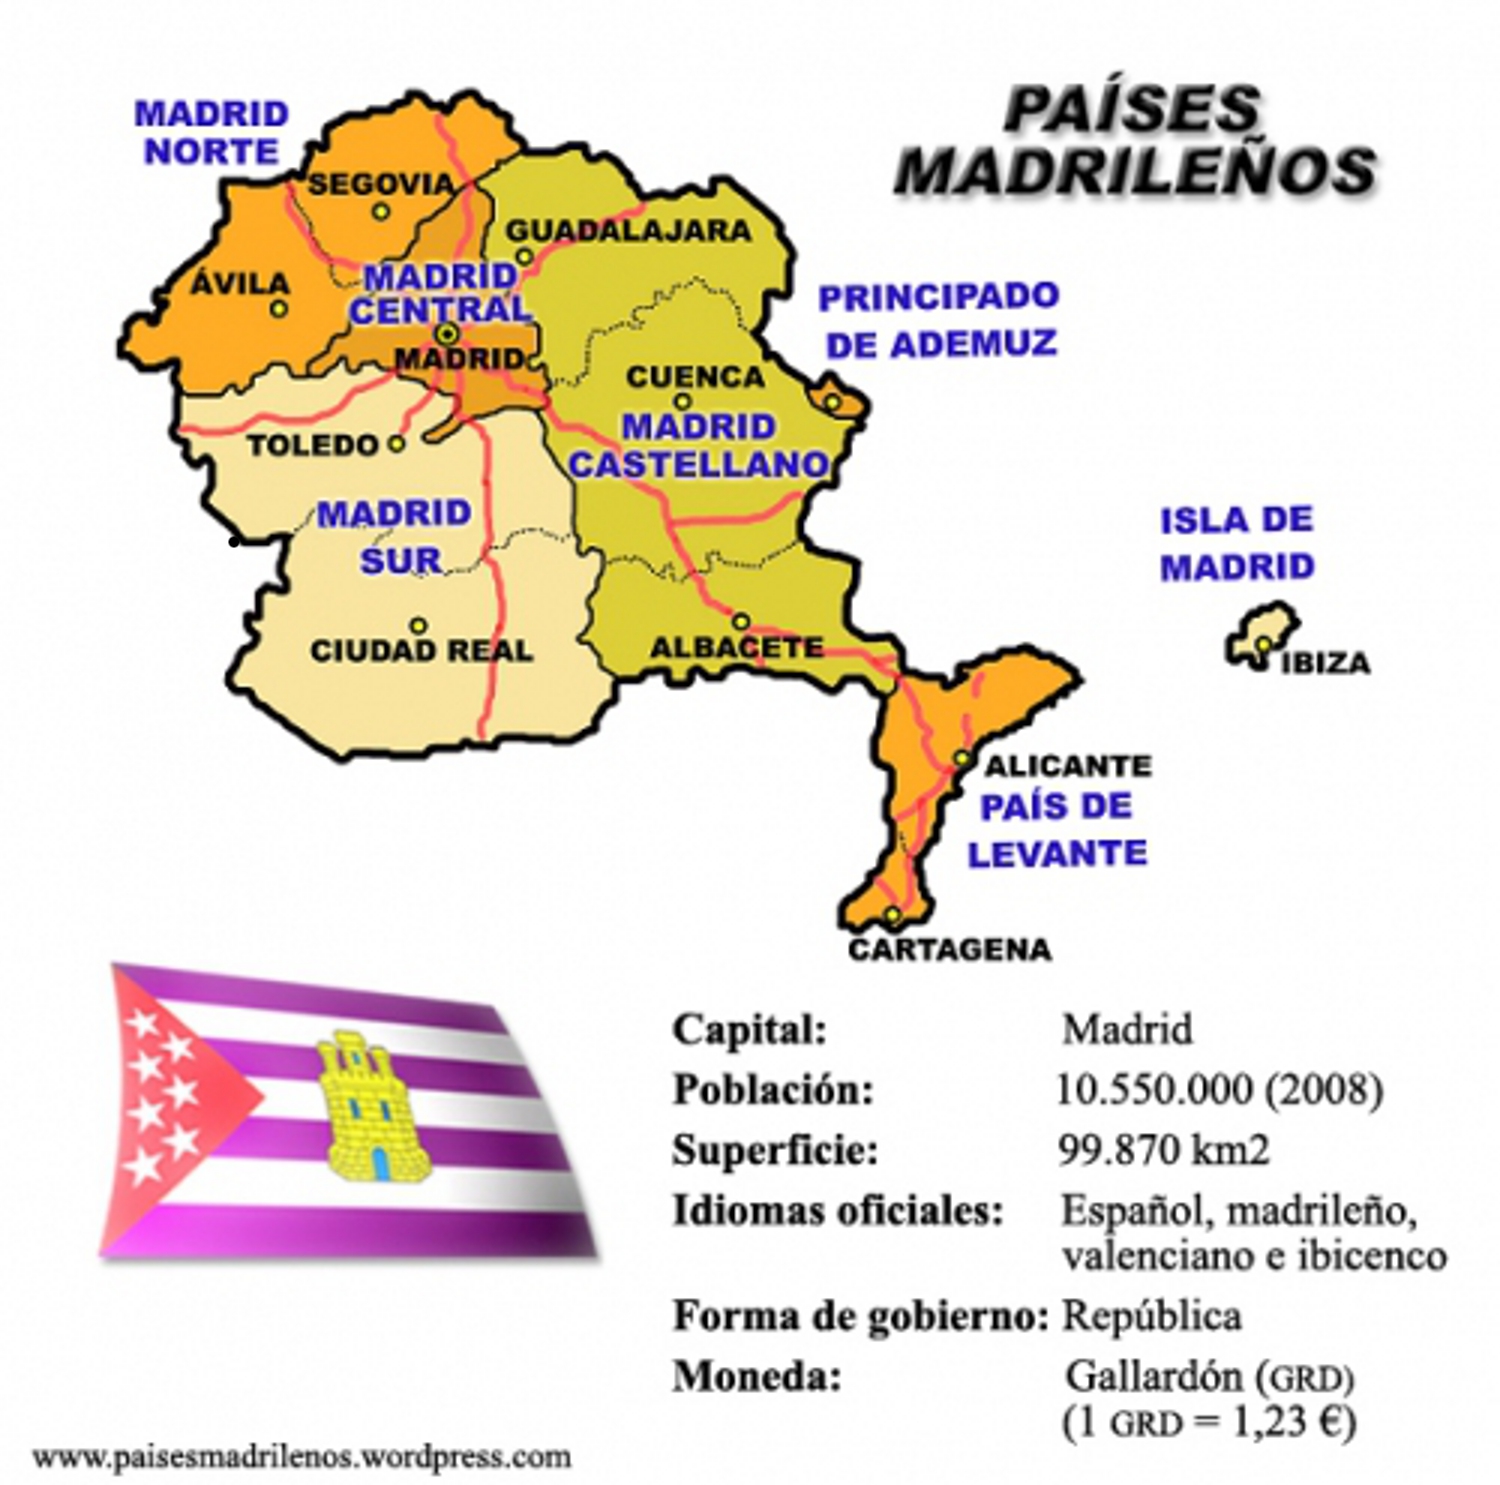 El topic de Podemos PAISES+MADRILE%C3%91OS